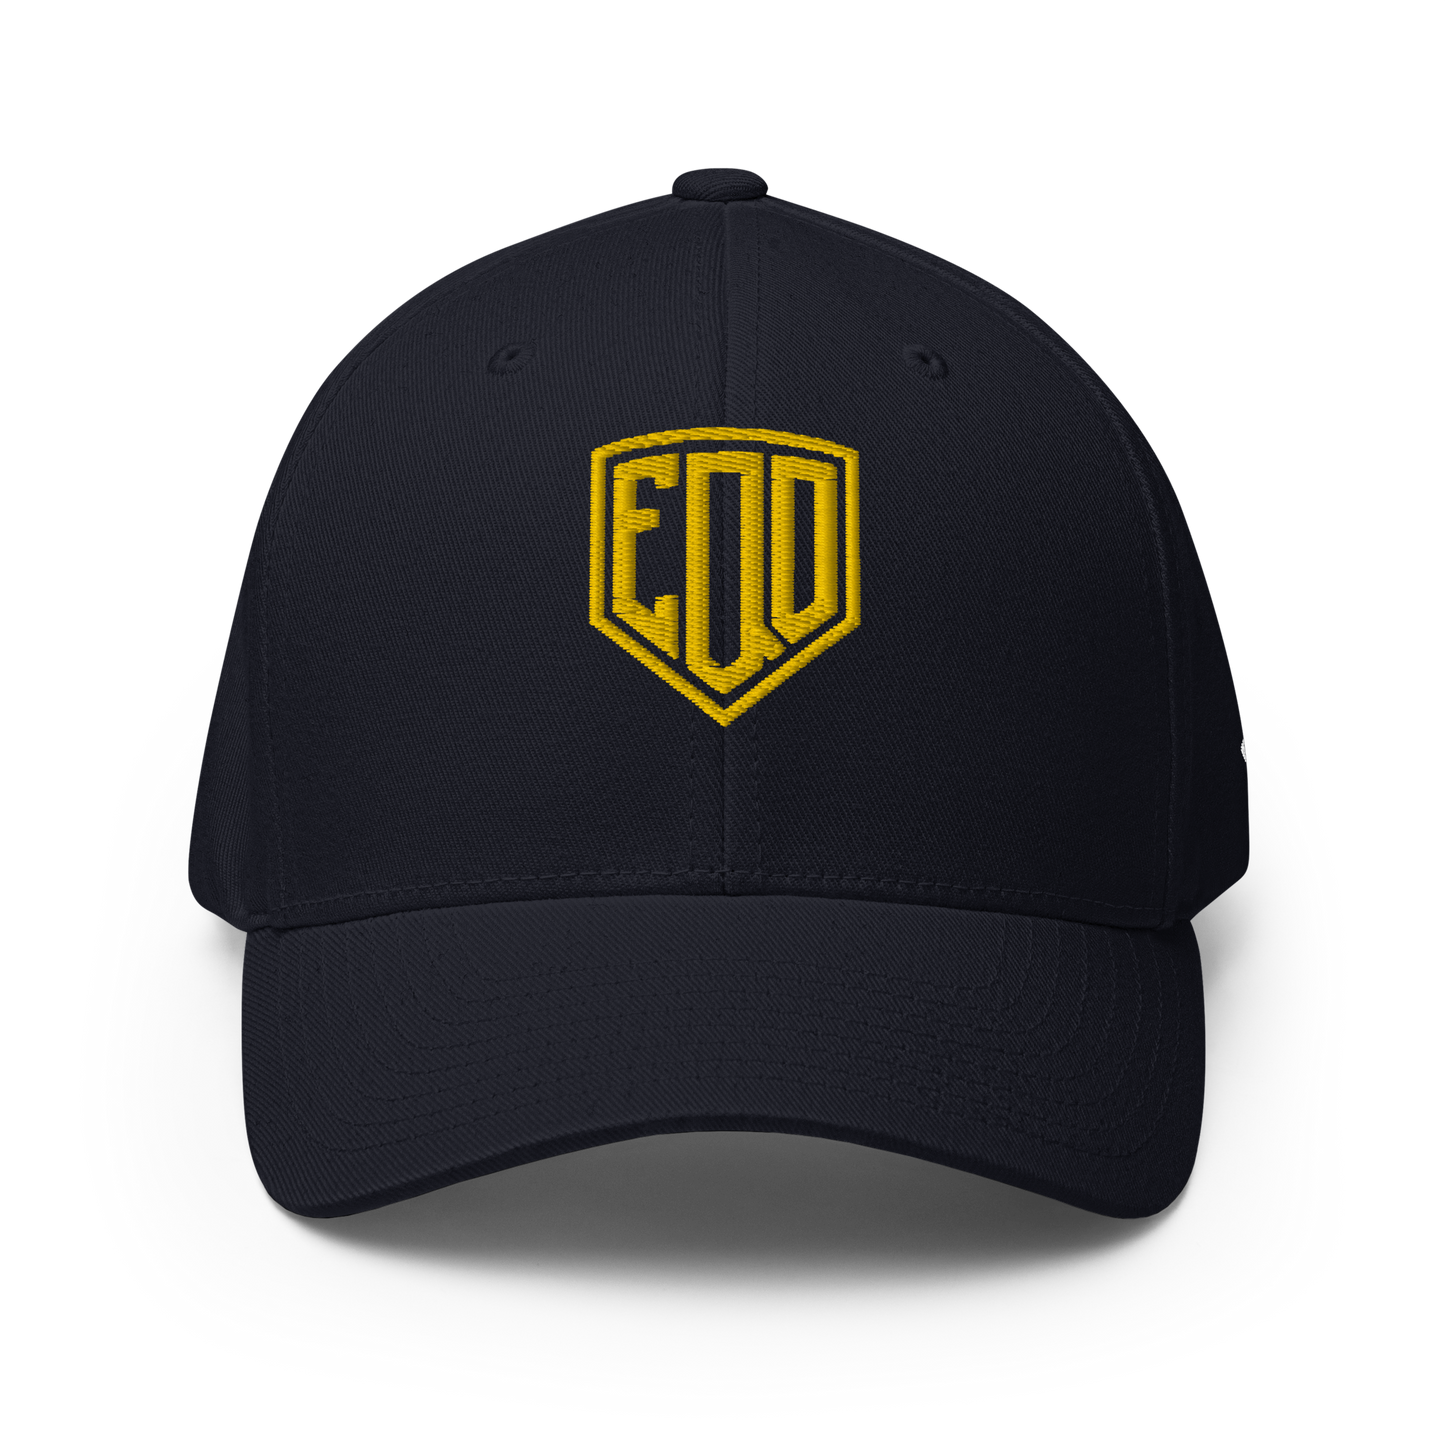 EQD - Flexfit Cap